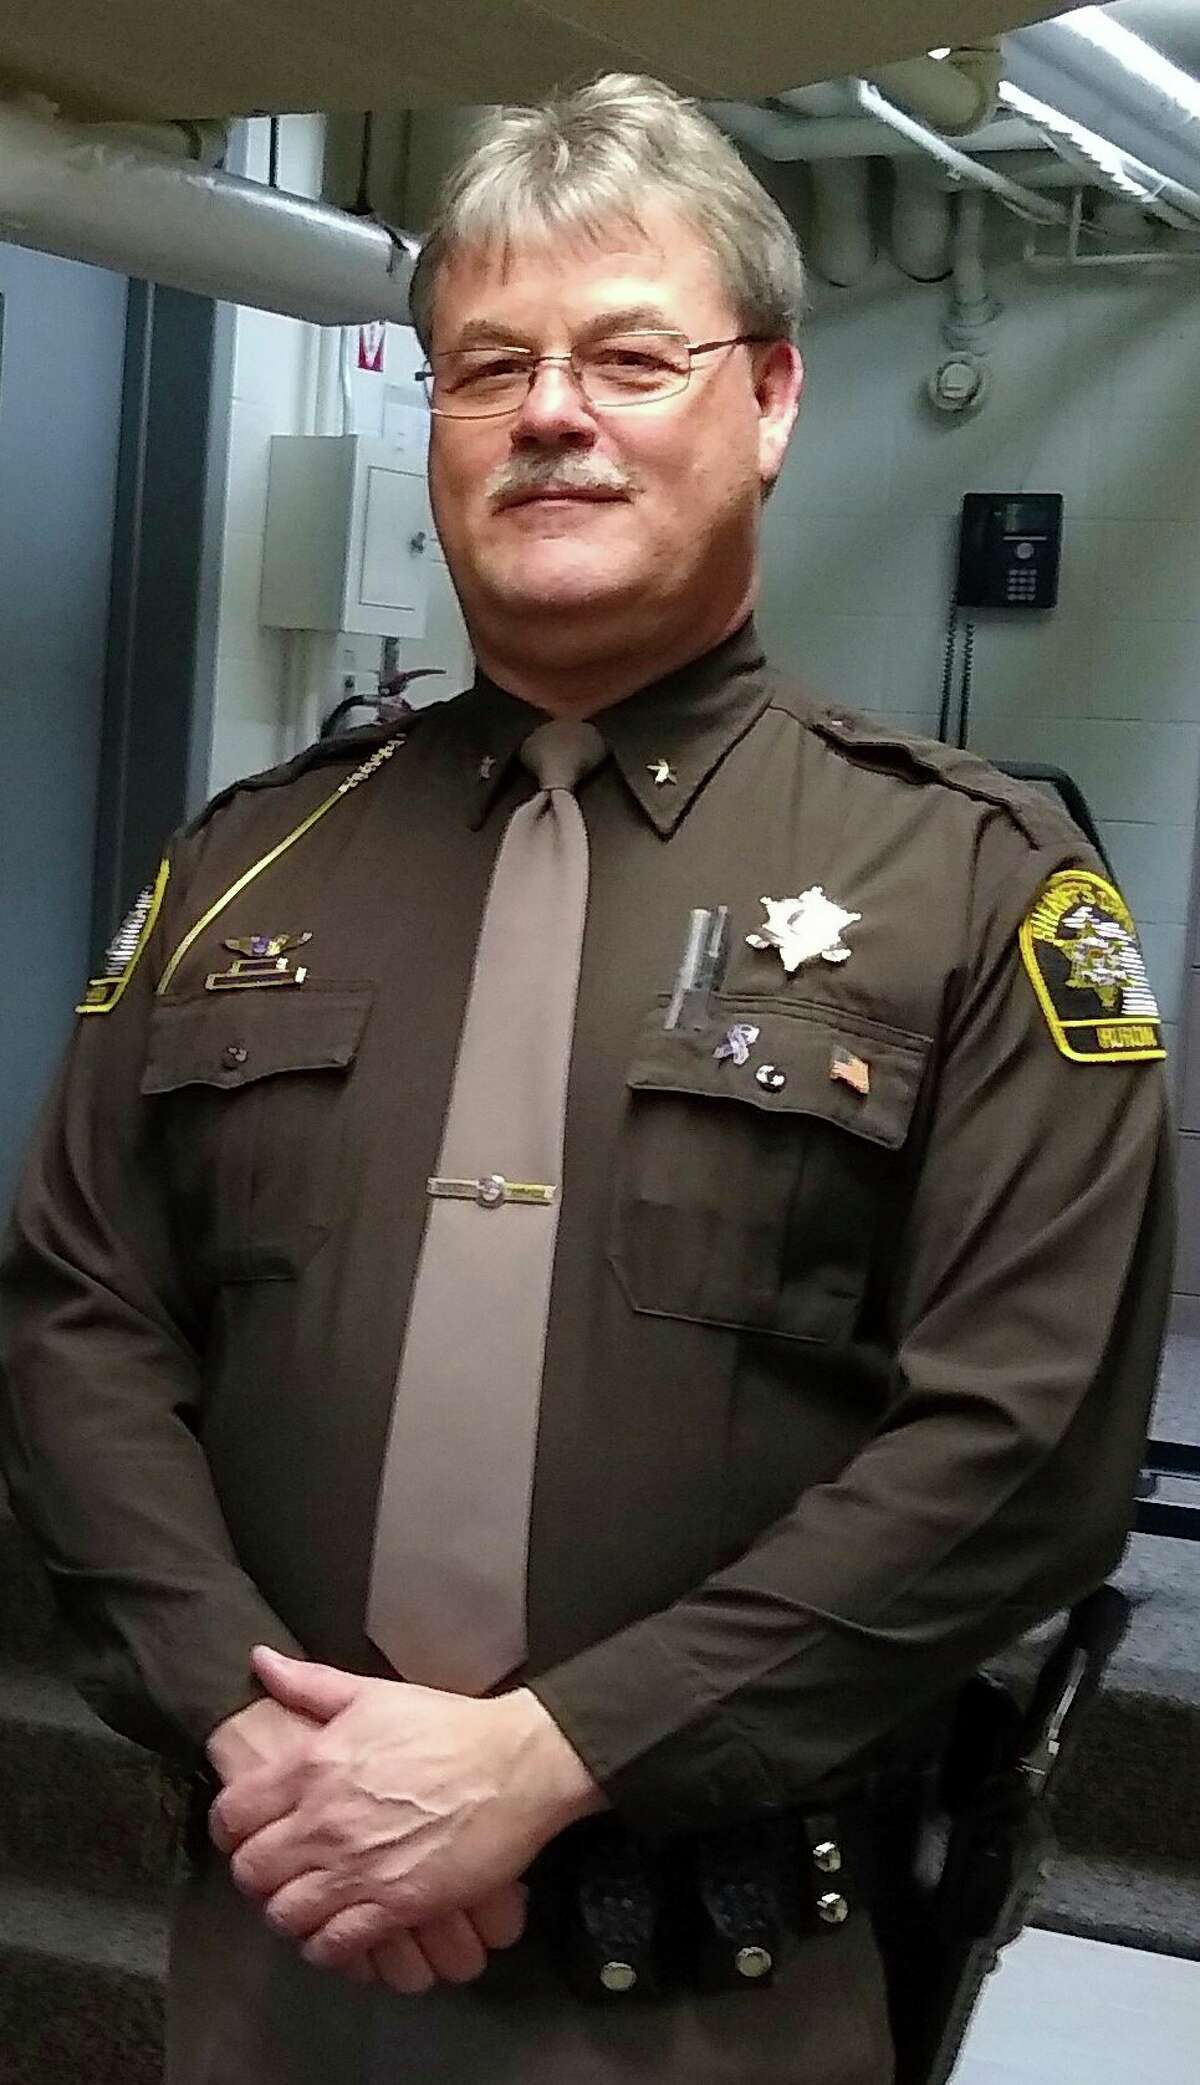 Sheriff Kelly Hanson